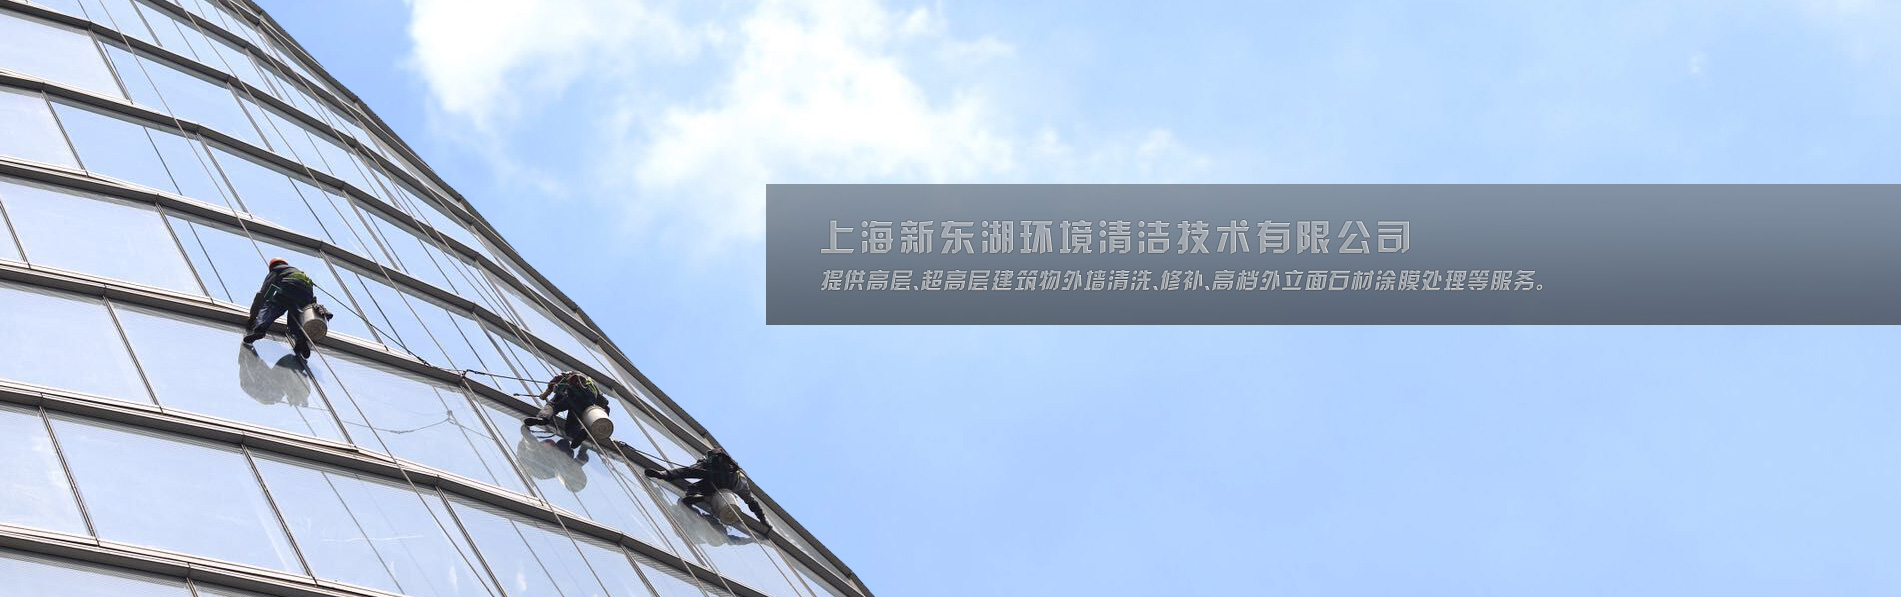 上海新东湖环境清洁技术有限公司